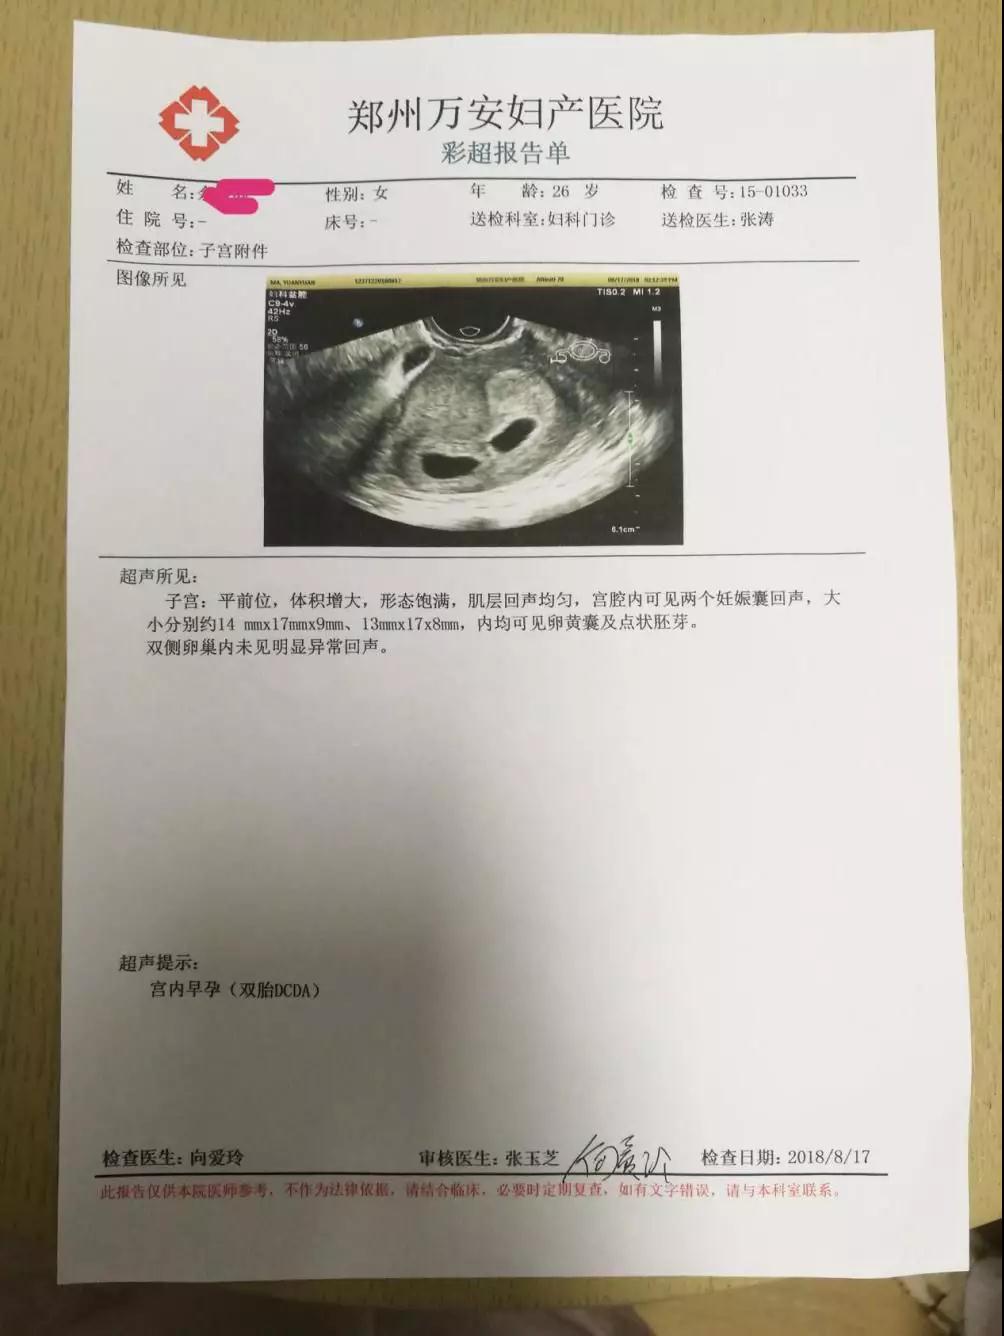 郑州一女子喜怀双胞胎宝宝 万安妇产医院帮圆妈妈梦